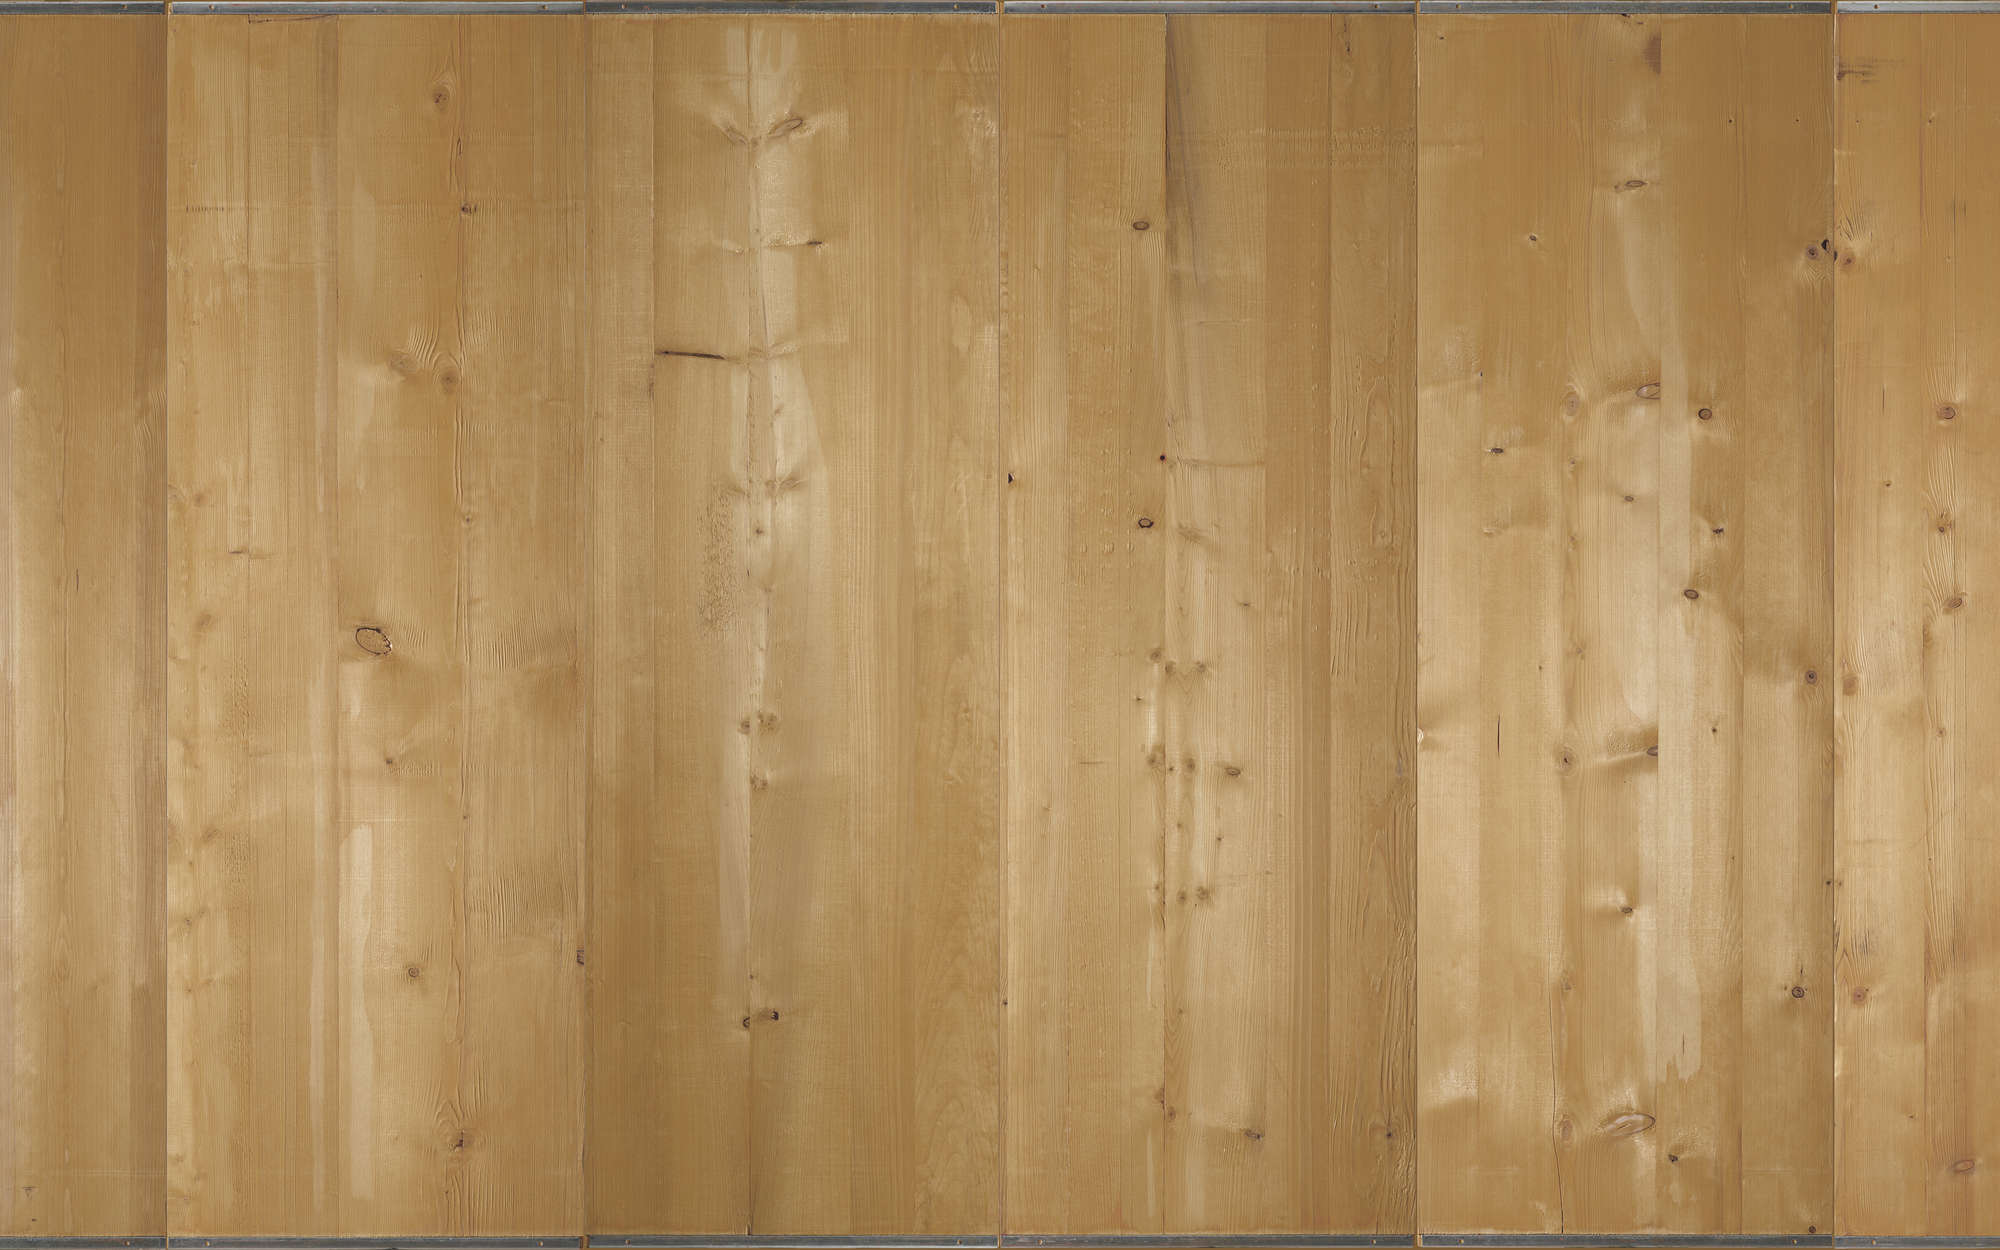             Fotomurali a listoni di legno chiaro - Materiali non tessuto testurizzato
        